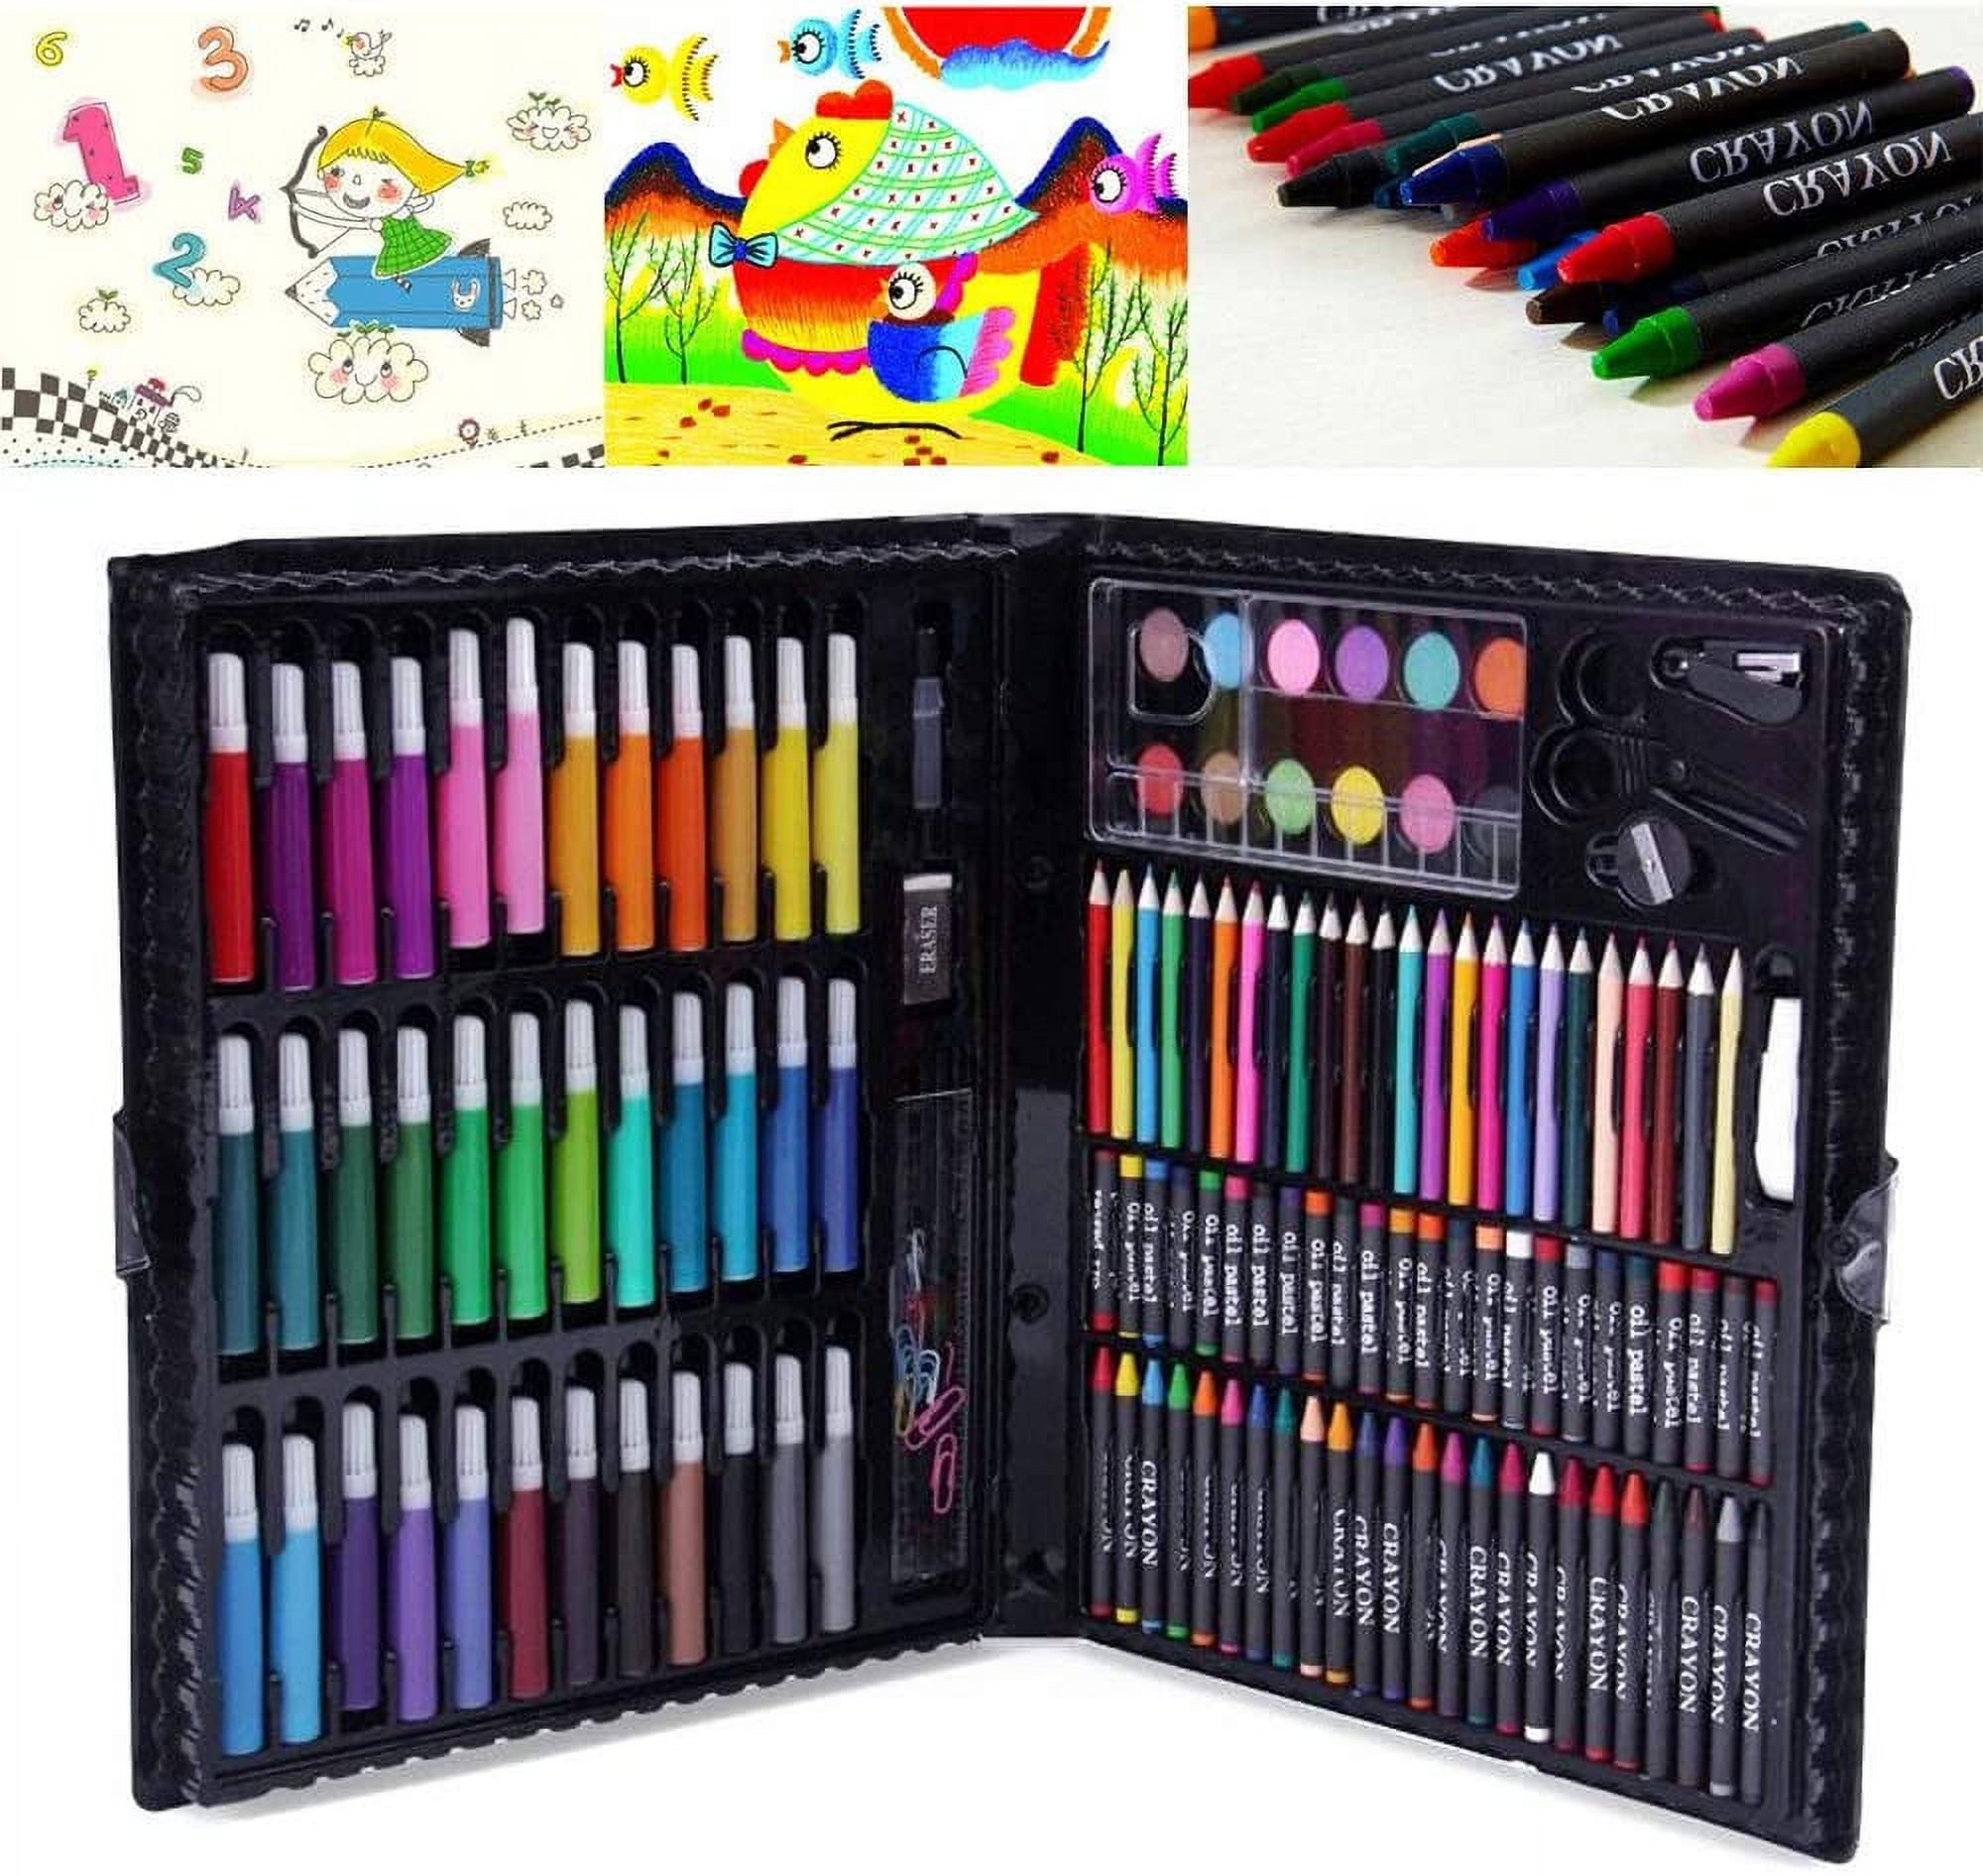 Artrylin 150 PCS Art Supplies, Art Kits, Art Set for Kids, Gfts